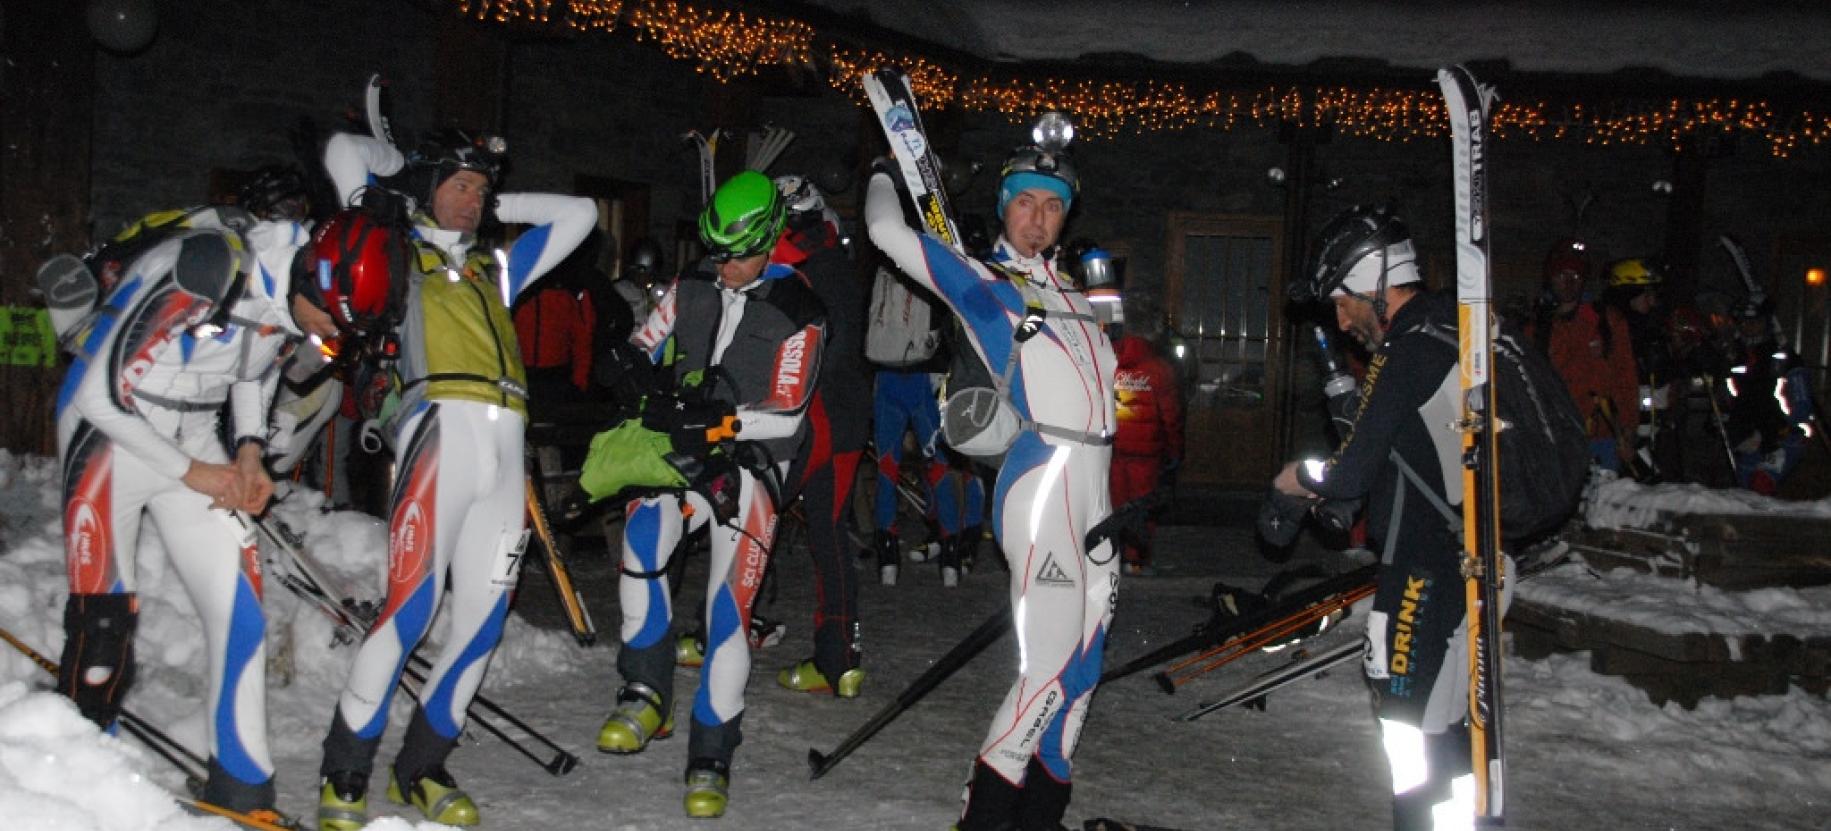 "Monterosa Ski Alp": night competition of ski mountaineering